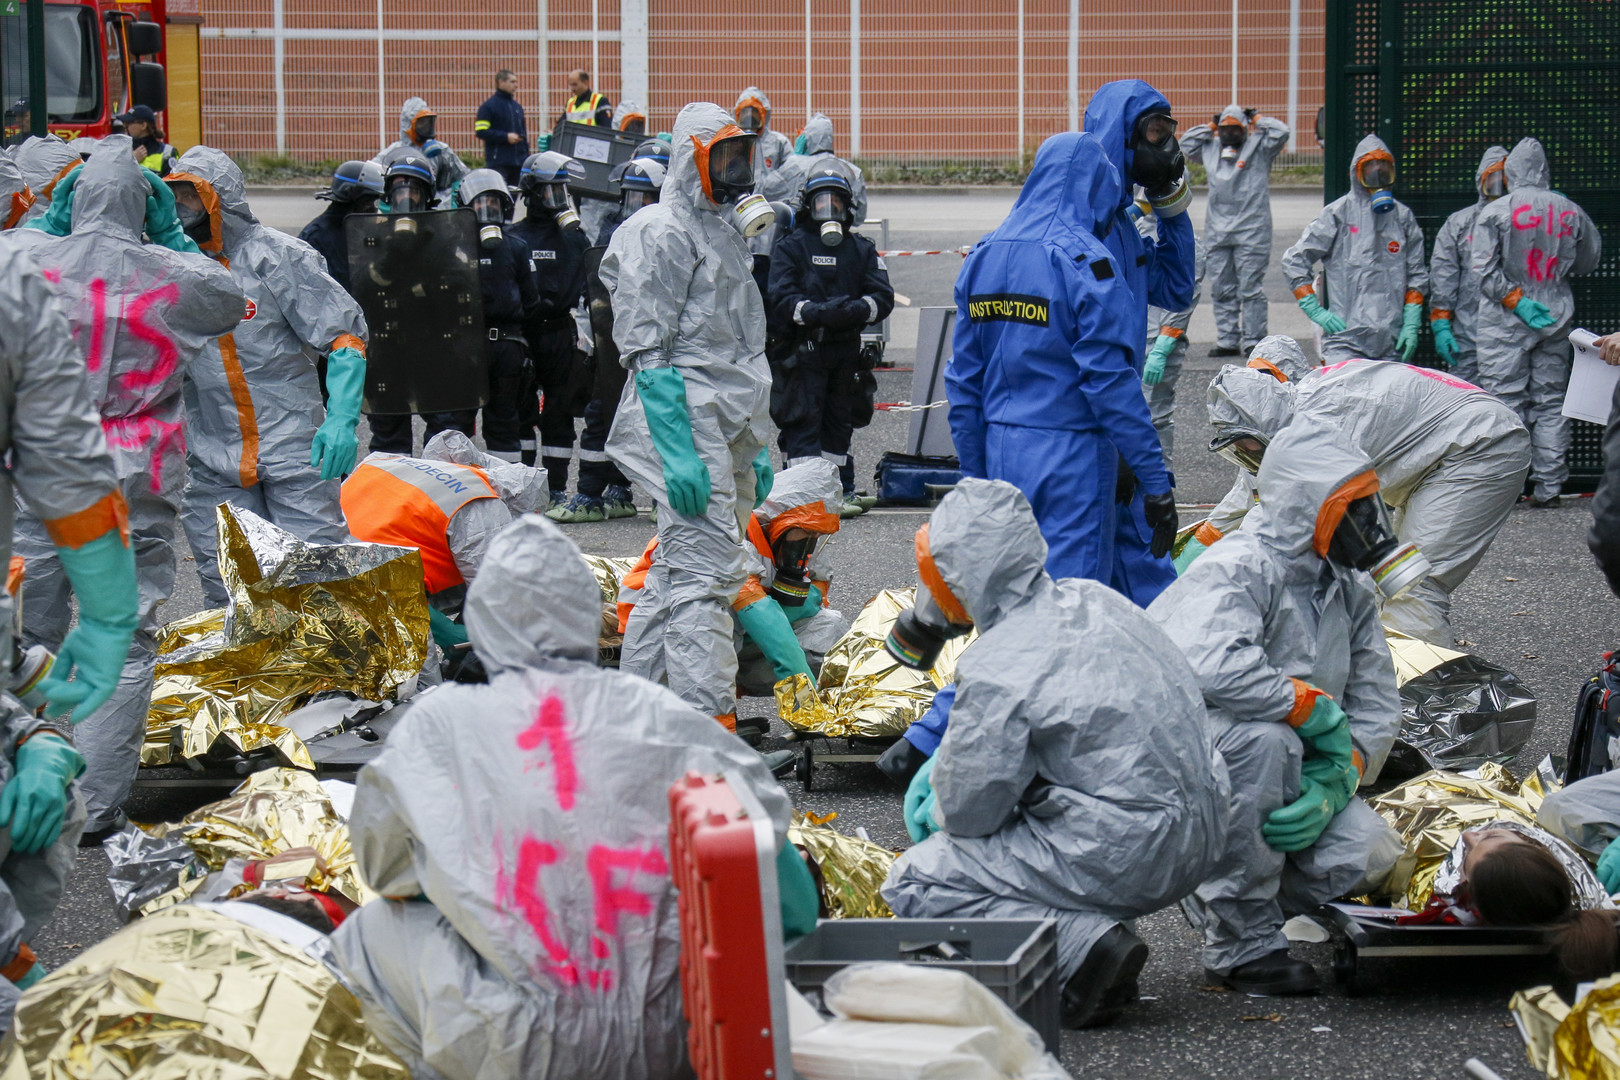 Euro-2016 : simulation d'une attaque chimique au stade de Saint-Etienne (PHOTOS)